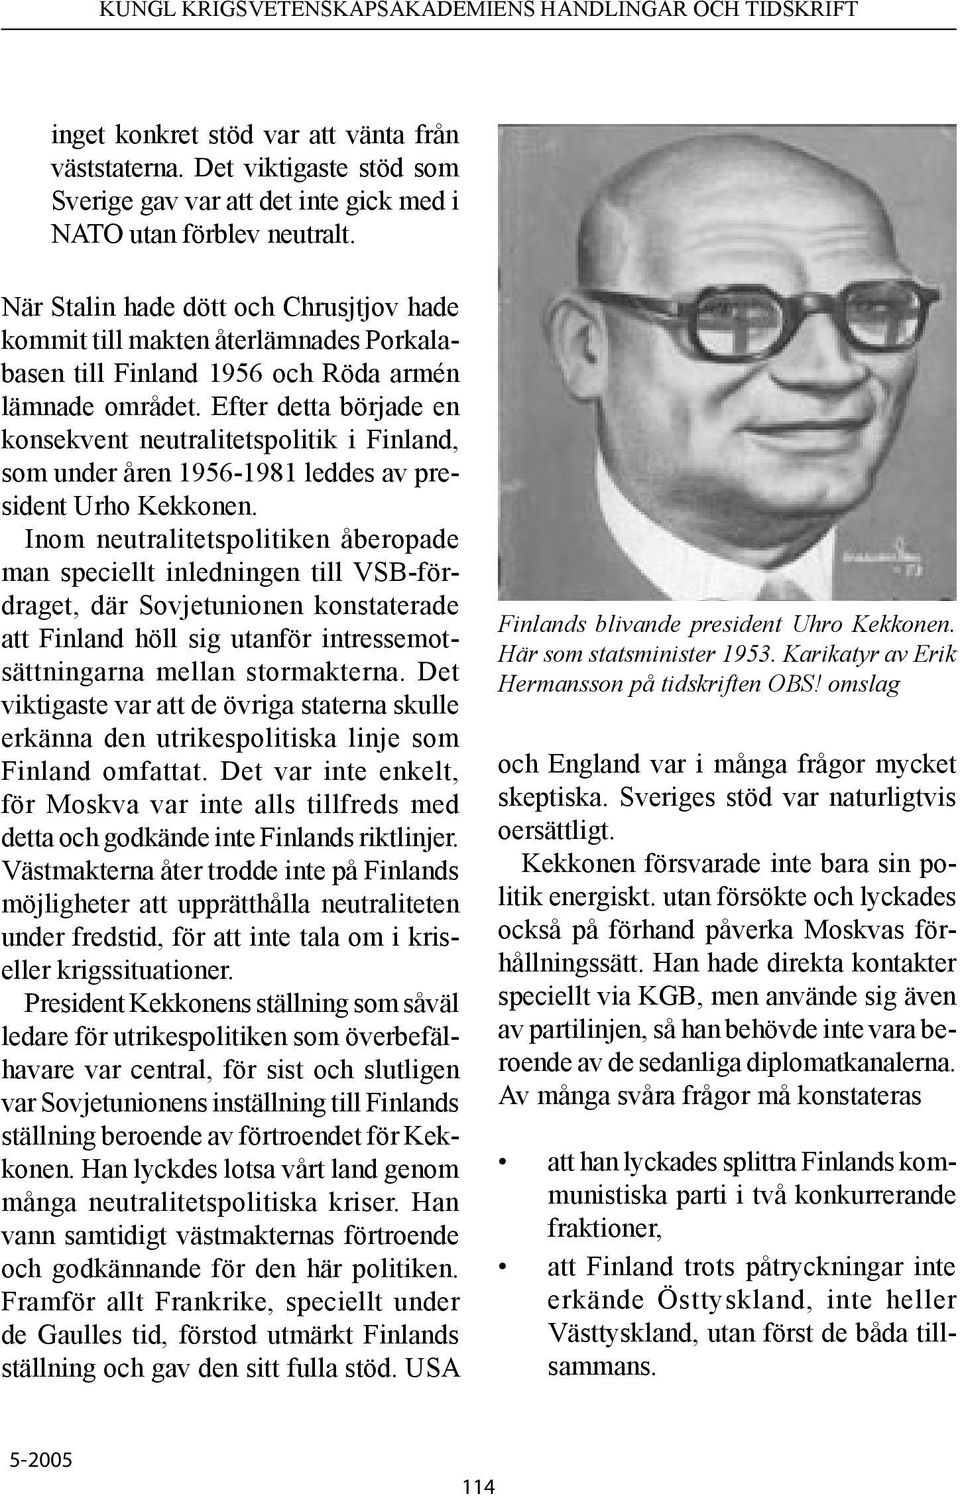 Efter detta började en konsekvent neutralitetspolitik i Finland, som under åren 1956-1981 leddes av president Urho Kekkonen.